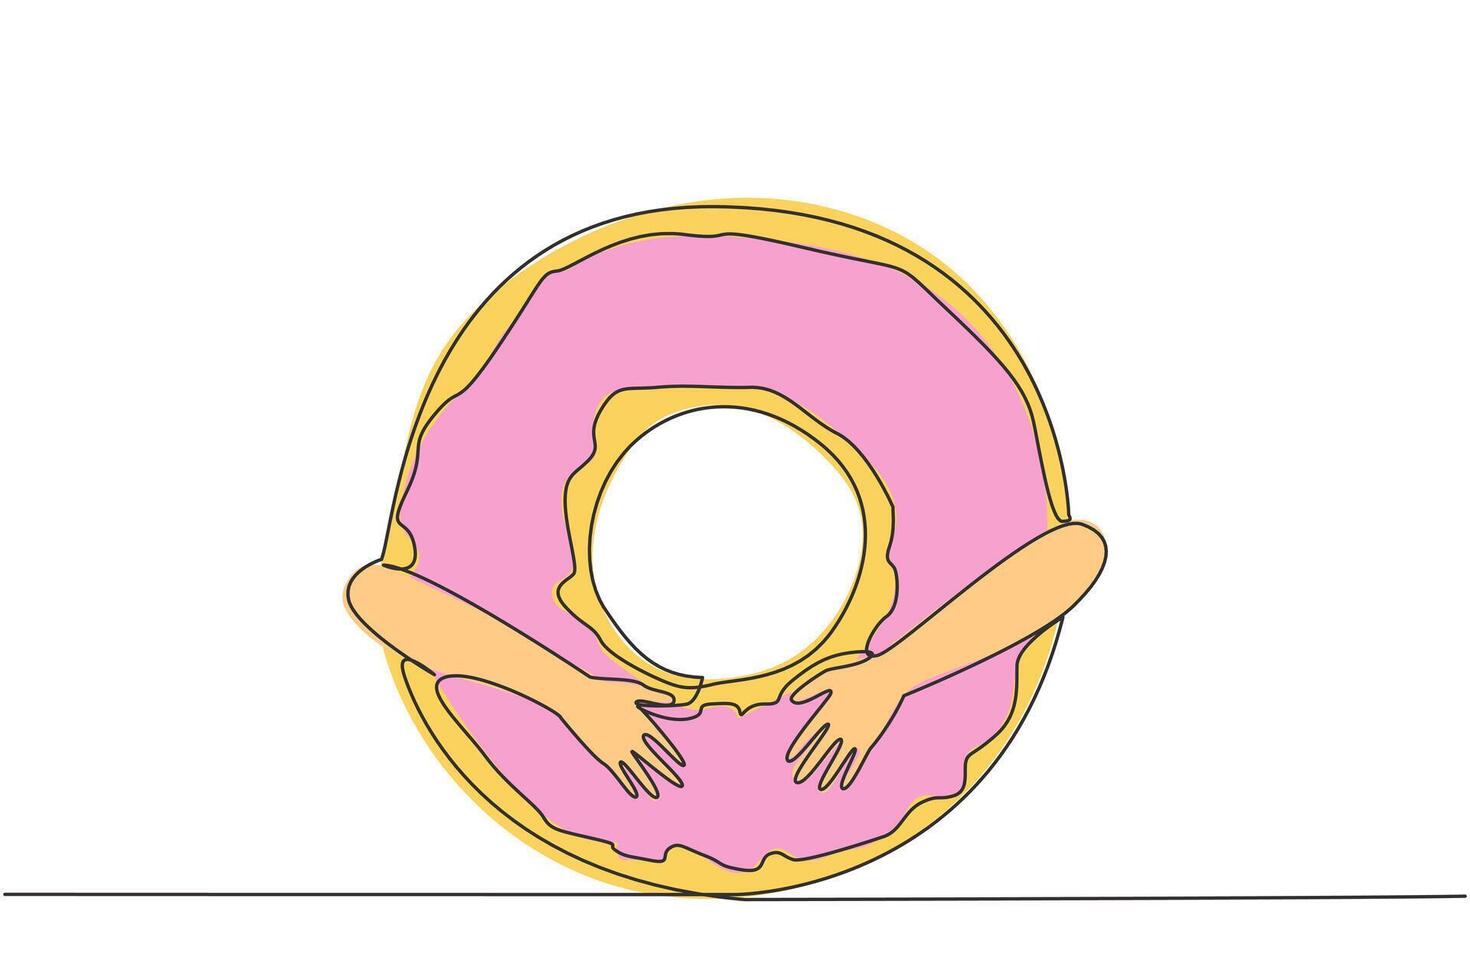 single doorlopend lijn tekening van handen knuffelen donut. taart dat heeft een karakteristiek het formulier van een gat in de midden. gemaakt van tarwe meel welke heeft meses topping Aan top. een lijn illustratie vector